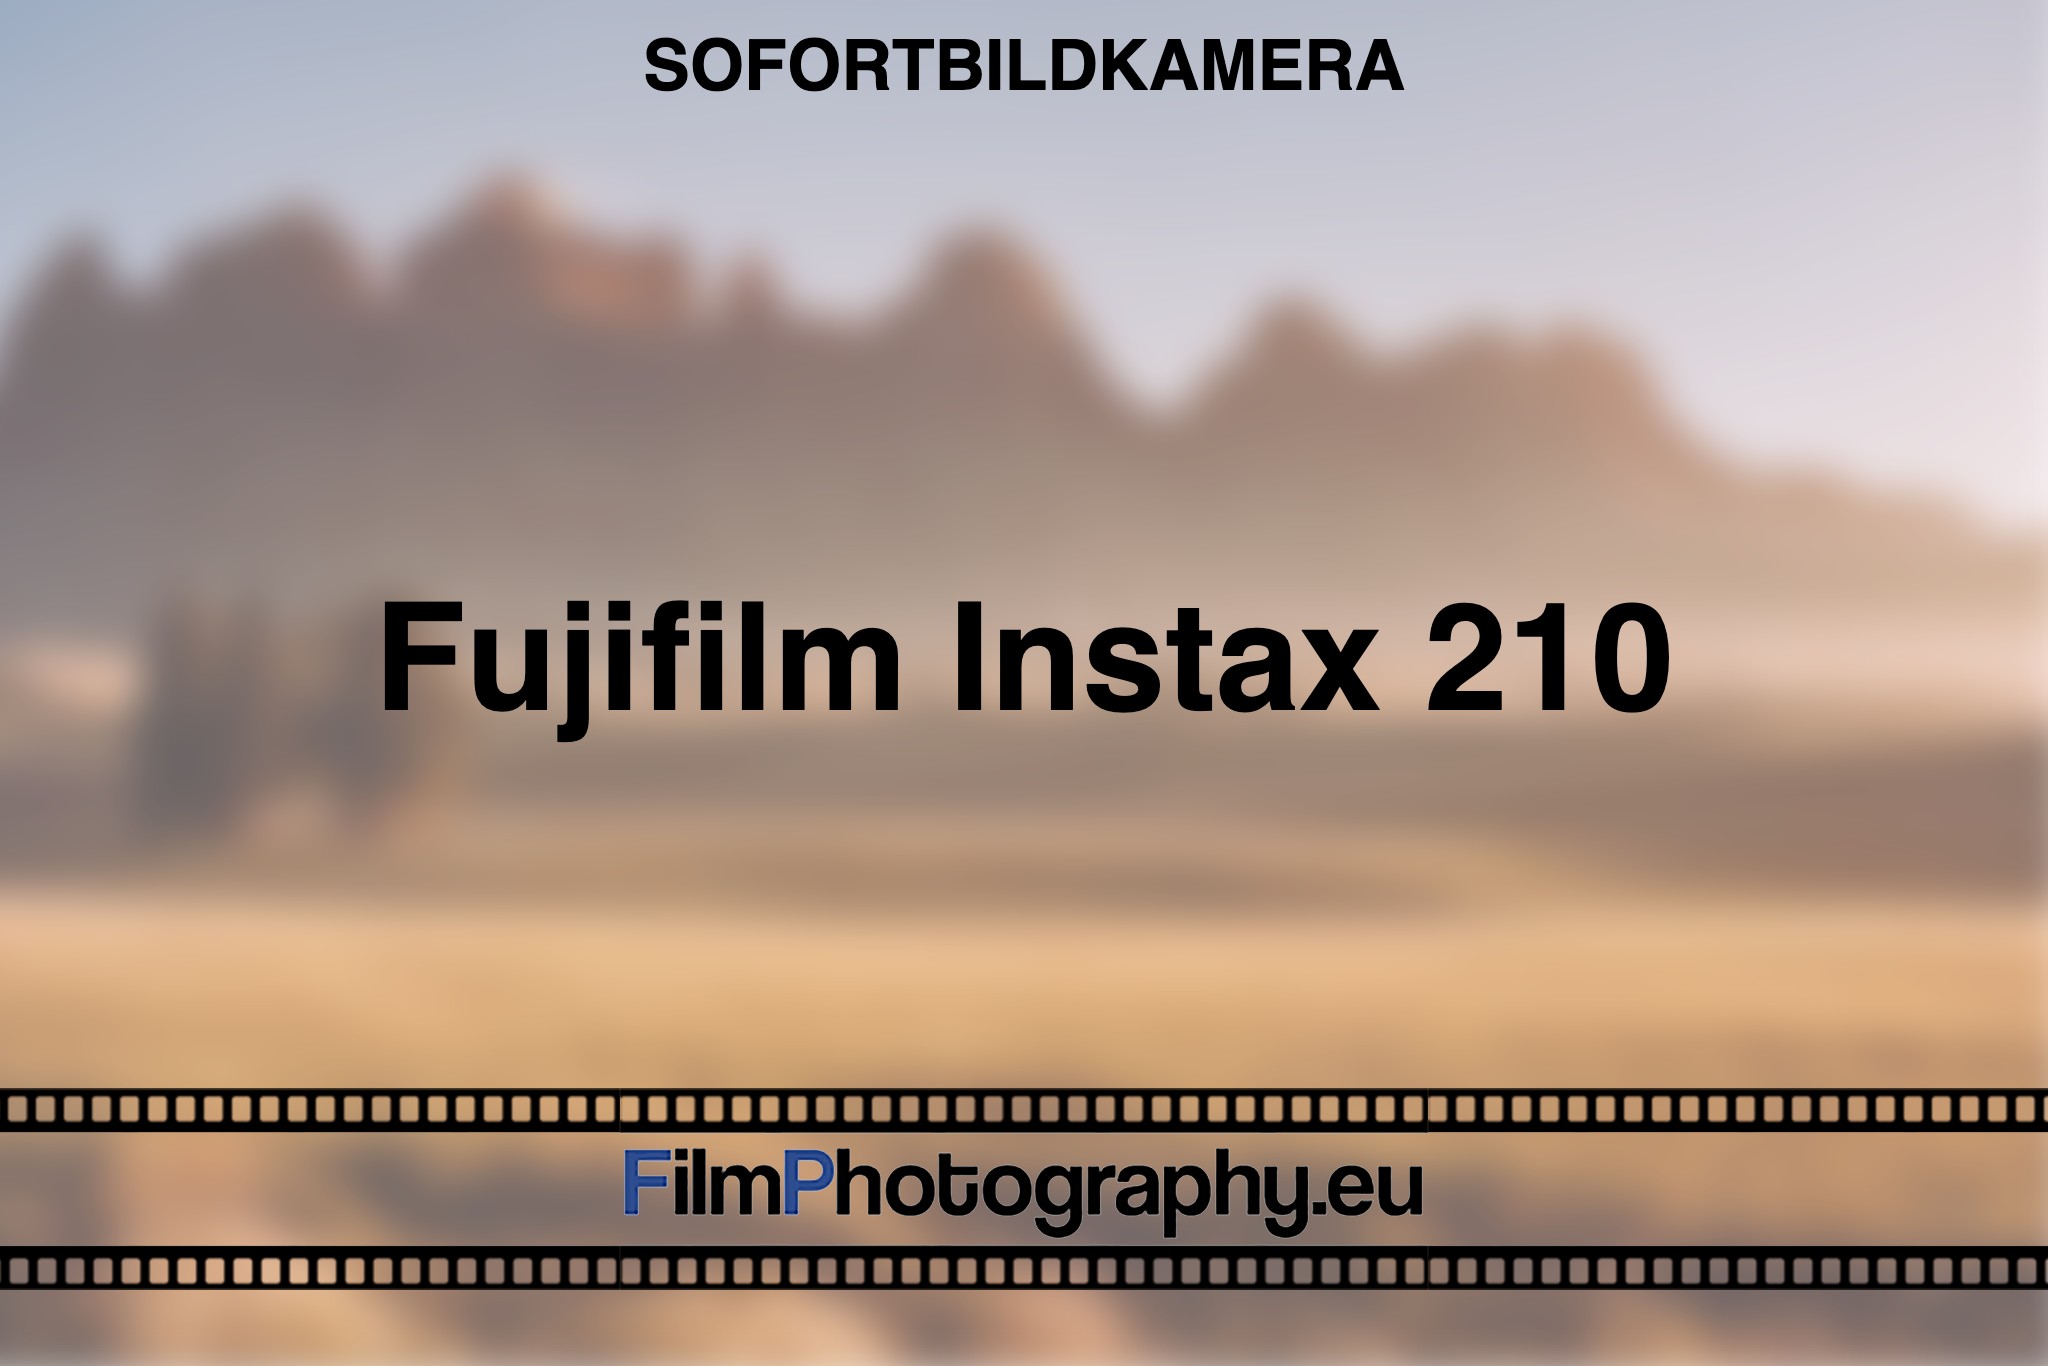 fujifilm-instax-210-sofortbildkamera-bnv